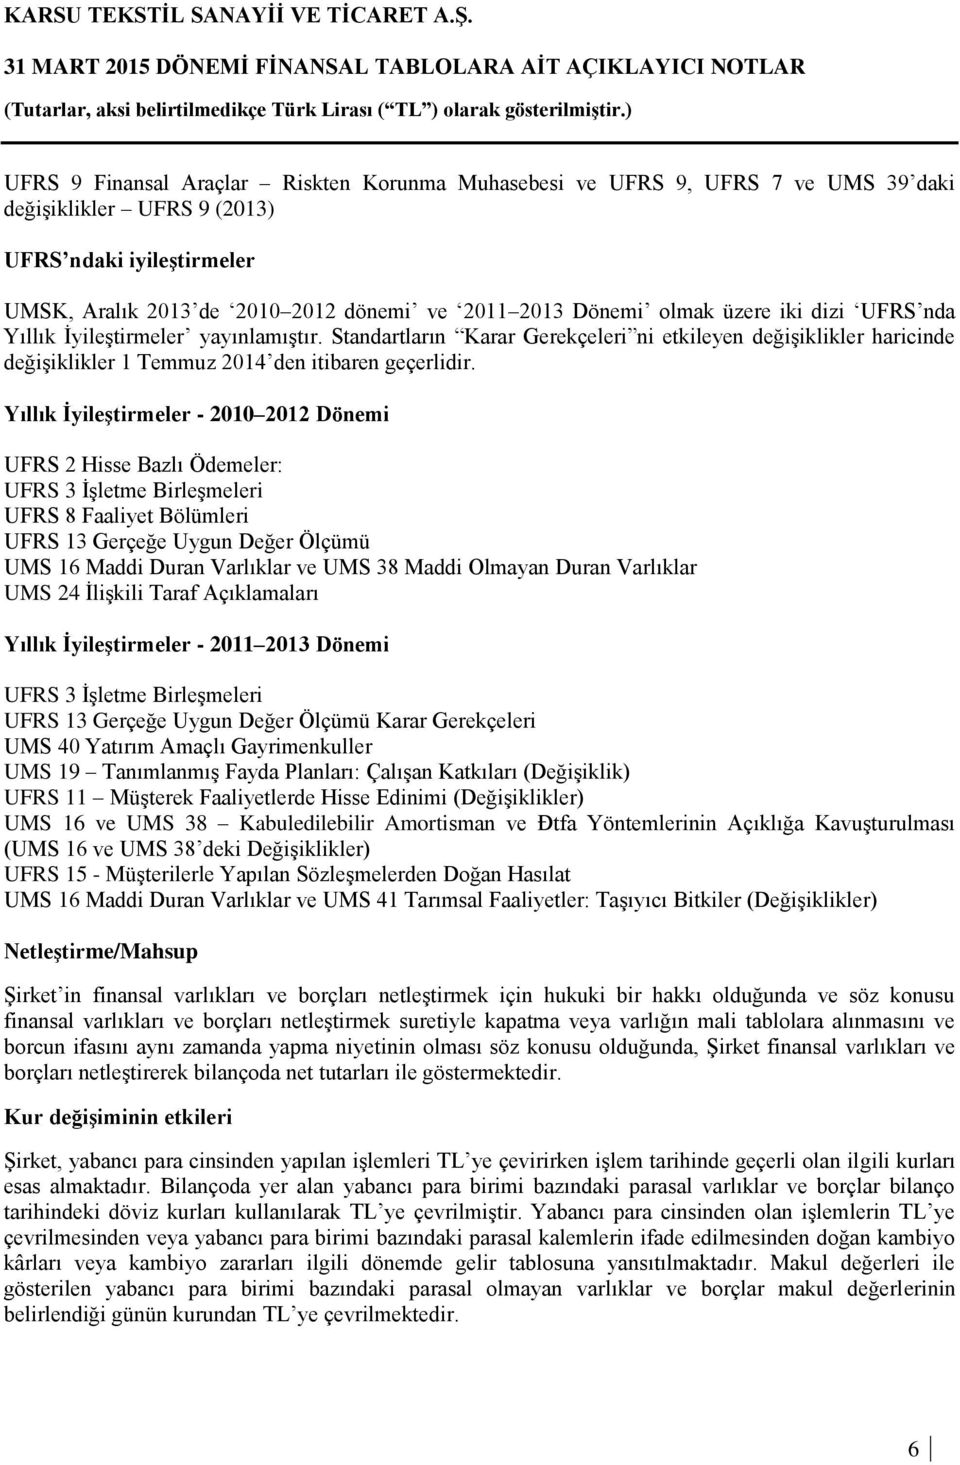 Yıllık İyileştirmeler - 2010 2012 Dönemi UFRS 2 Hisse Bazlı Ödemeler: UFRS 3 İşletme Birleşmeleri UFRS 8 Faaliyet Bölümleri UFRS 13 Gerçeğe Uygun Değer Ölçümü UMS 16 Maddi Duran Varlıklar ve UMS 38